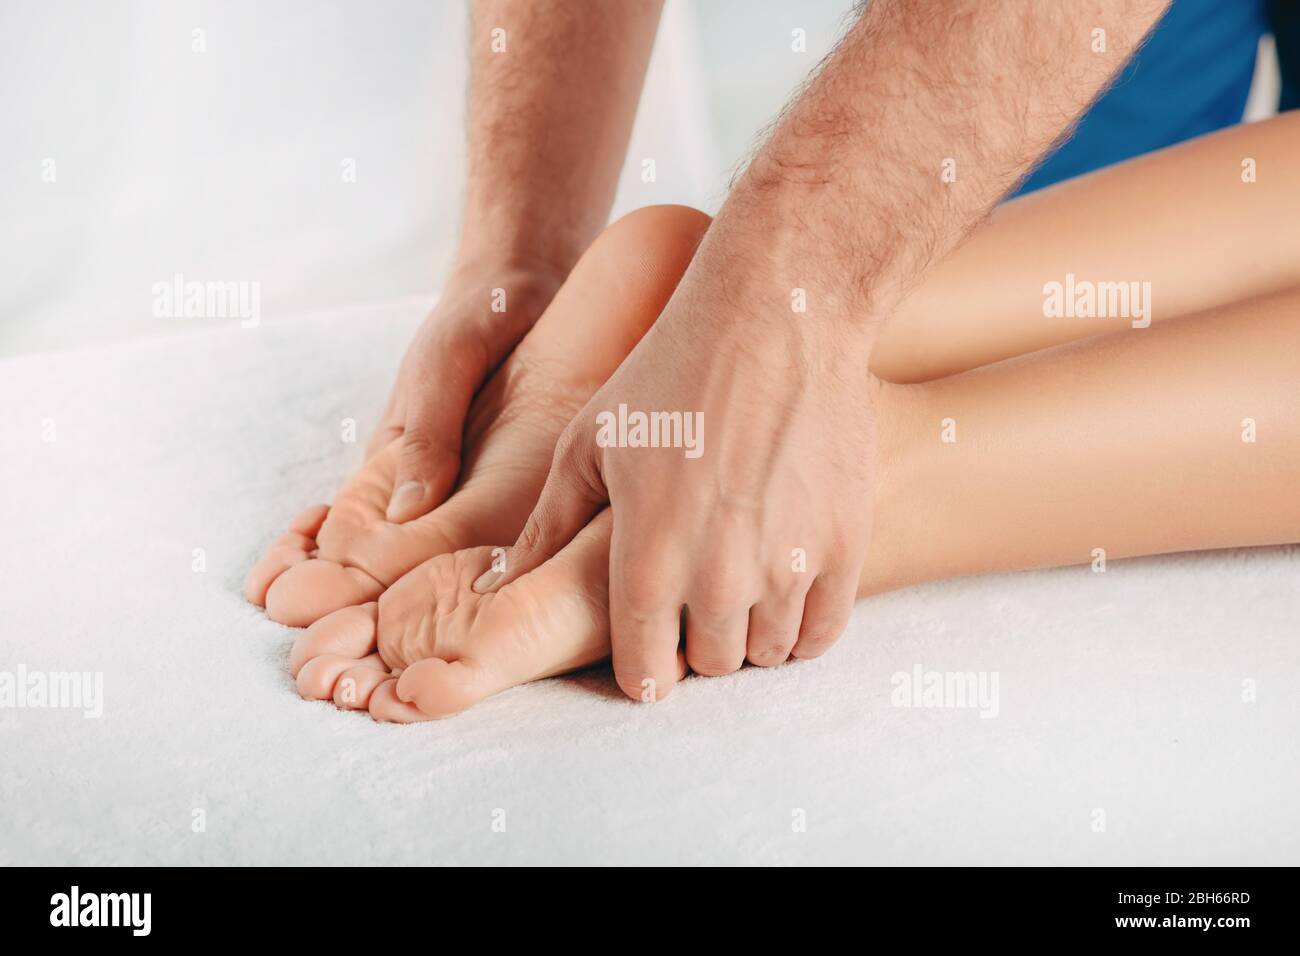 Reflexzonenmassage, Fußmassage. Massagen für Männer spezielle Punkte auf dem weiblichen Fuß. Entspannende Fußmassage Stockfoto